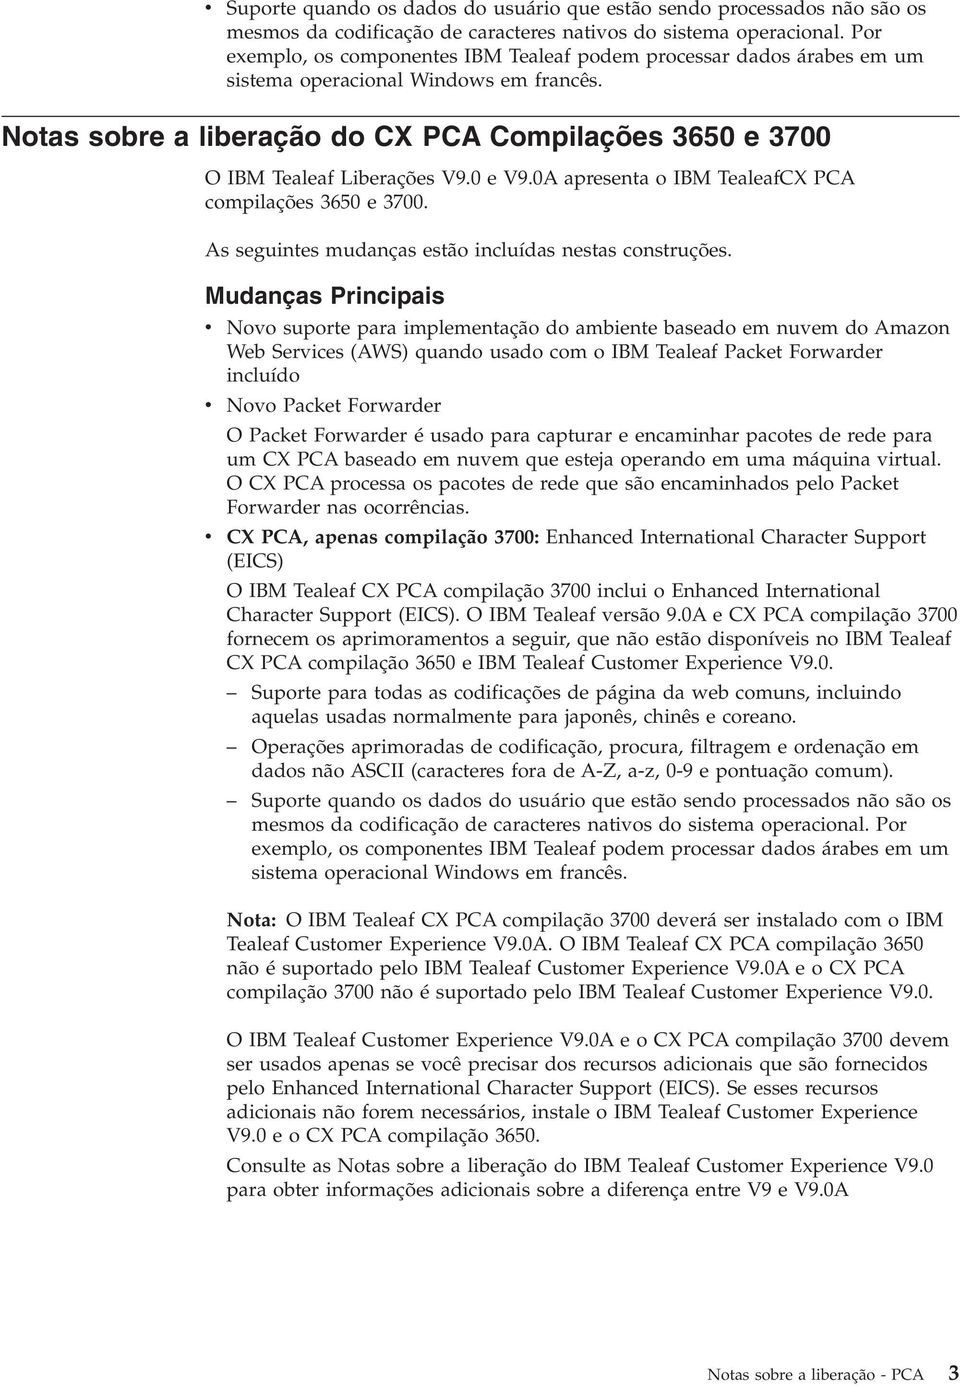 Notas sobre a liberação do CX PCA Compilações 3650 e 3700 O IBM Tealeaf Liberações V9.0 e V9.0A apresenta o IBM TealeafCX PCA compilações 3650 e 3700.